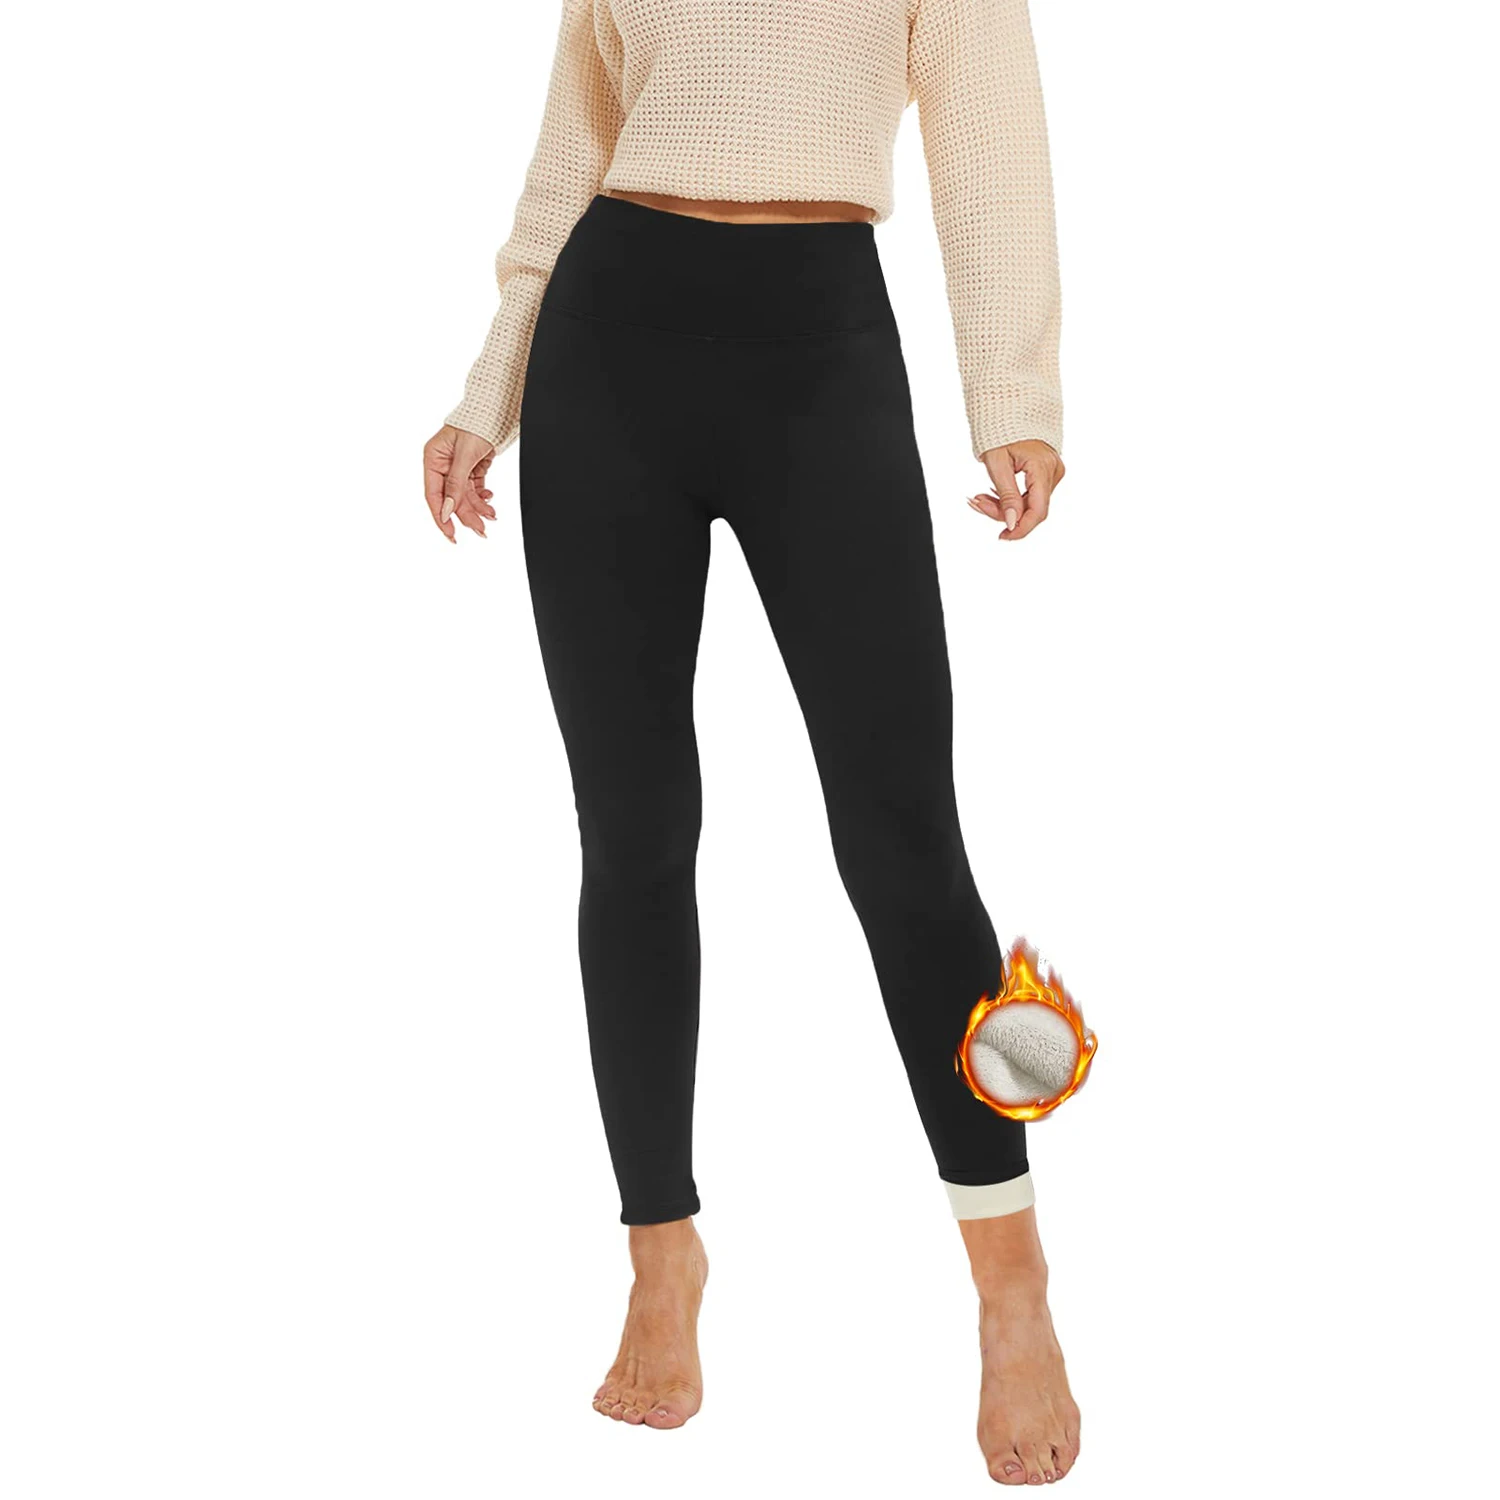 thick winter leggings winter yoga pants warm knitting velvet thermo leggings winter women Workout